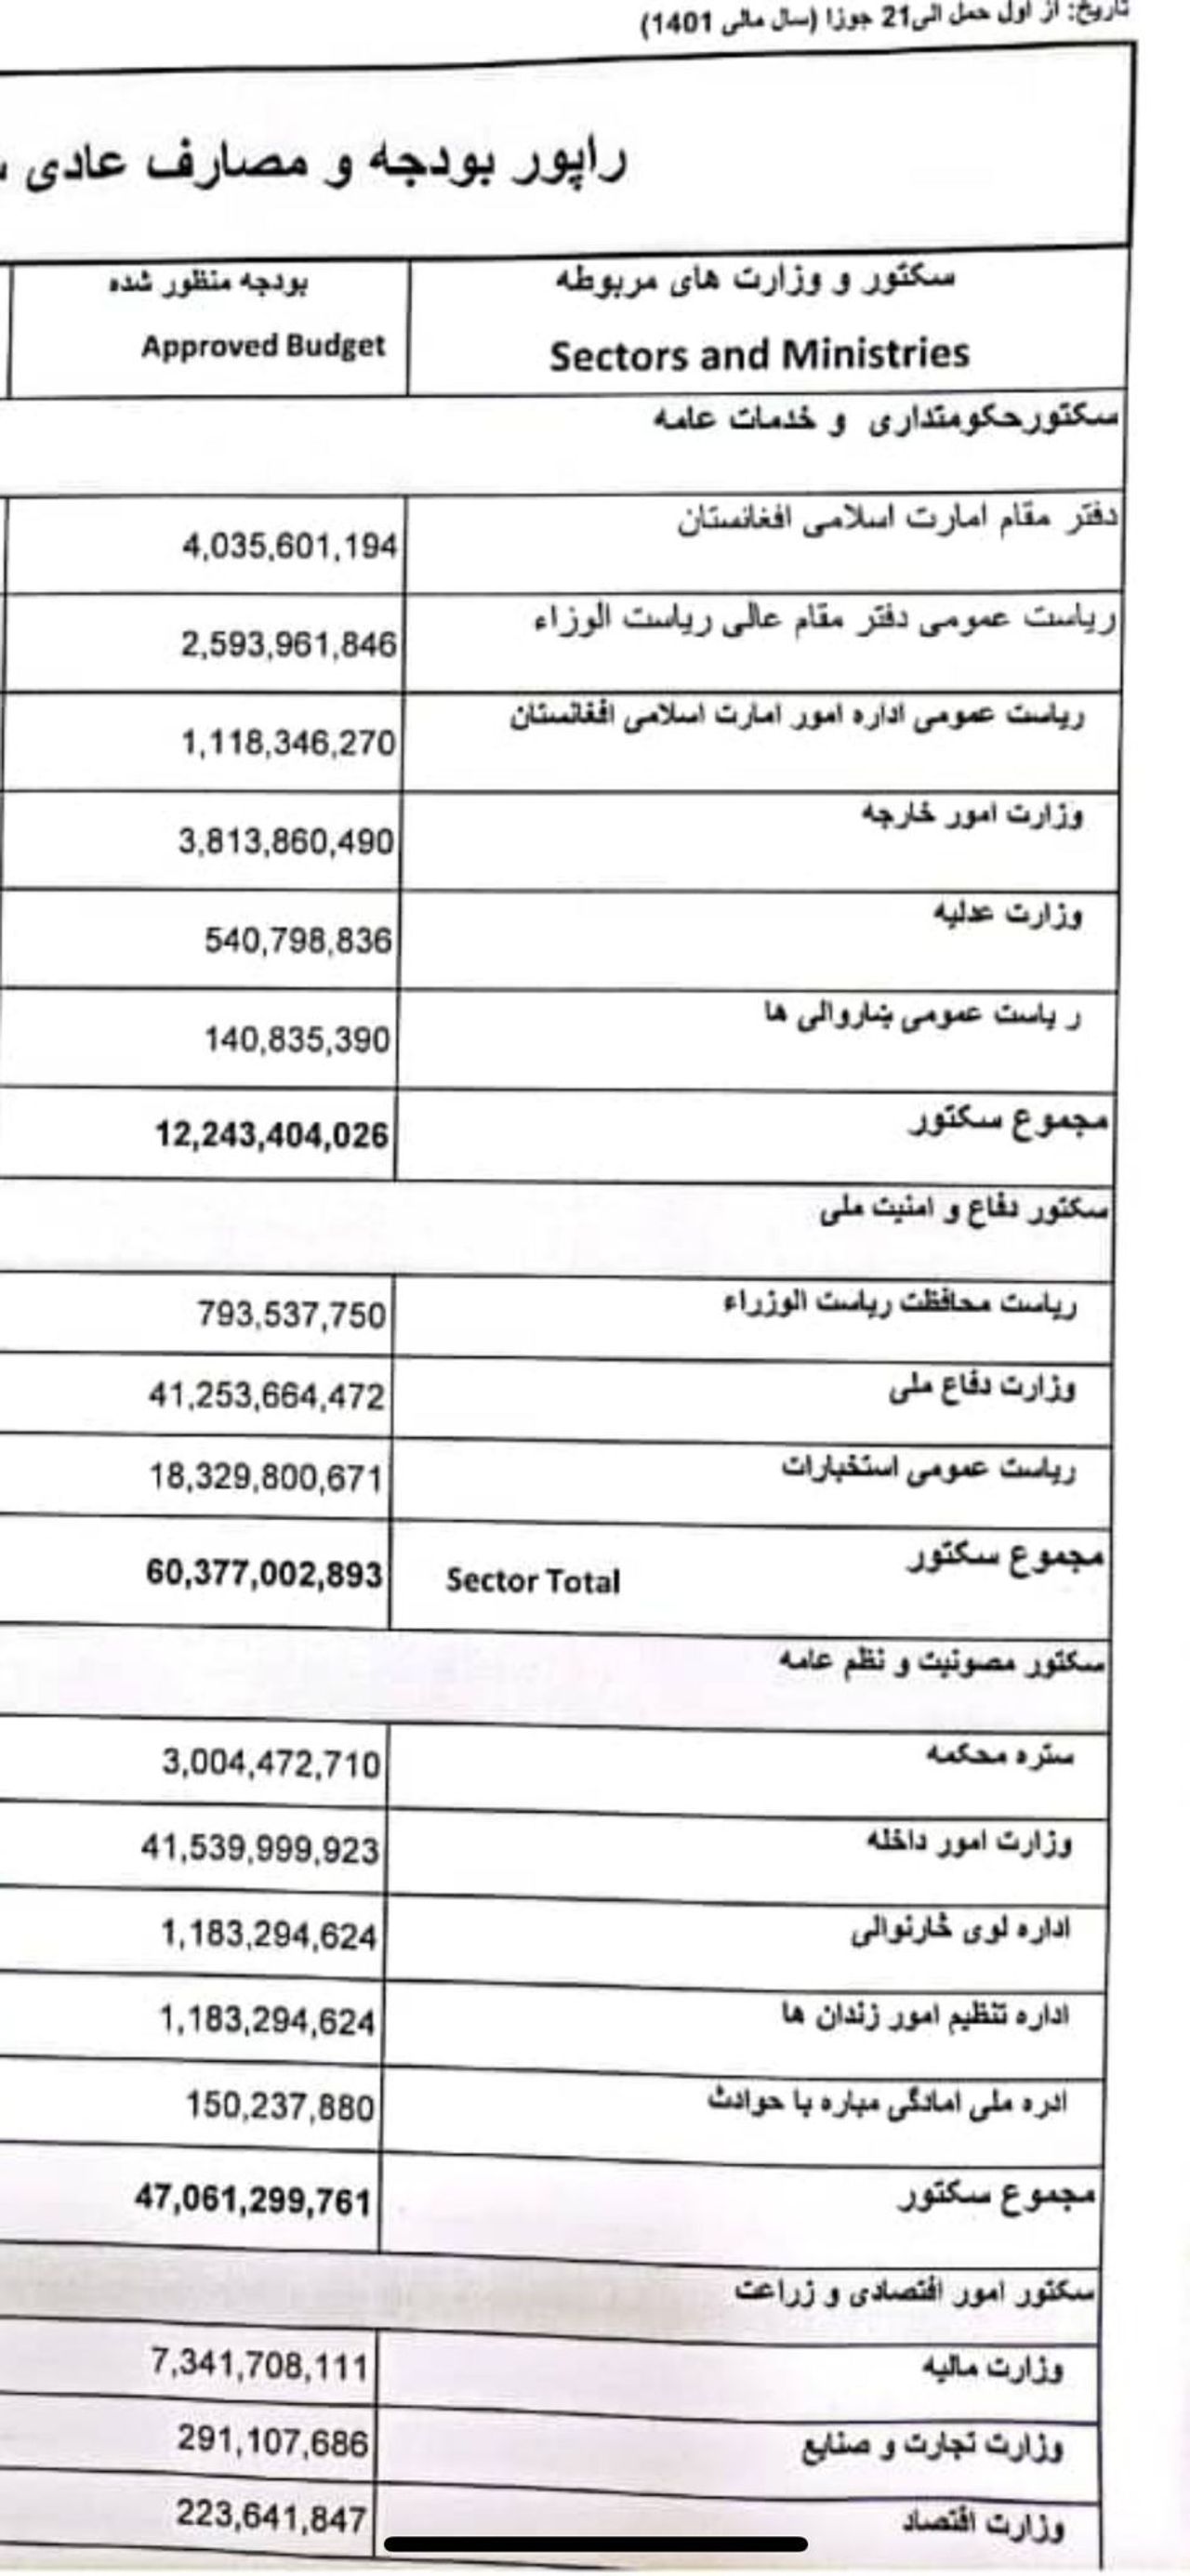 بودجه یکساله شماری از ادارات طالبان